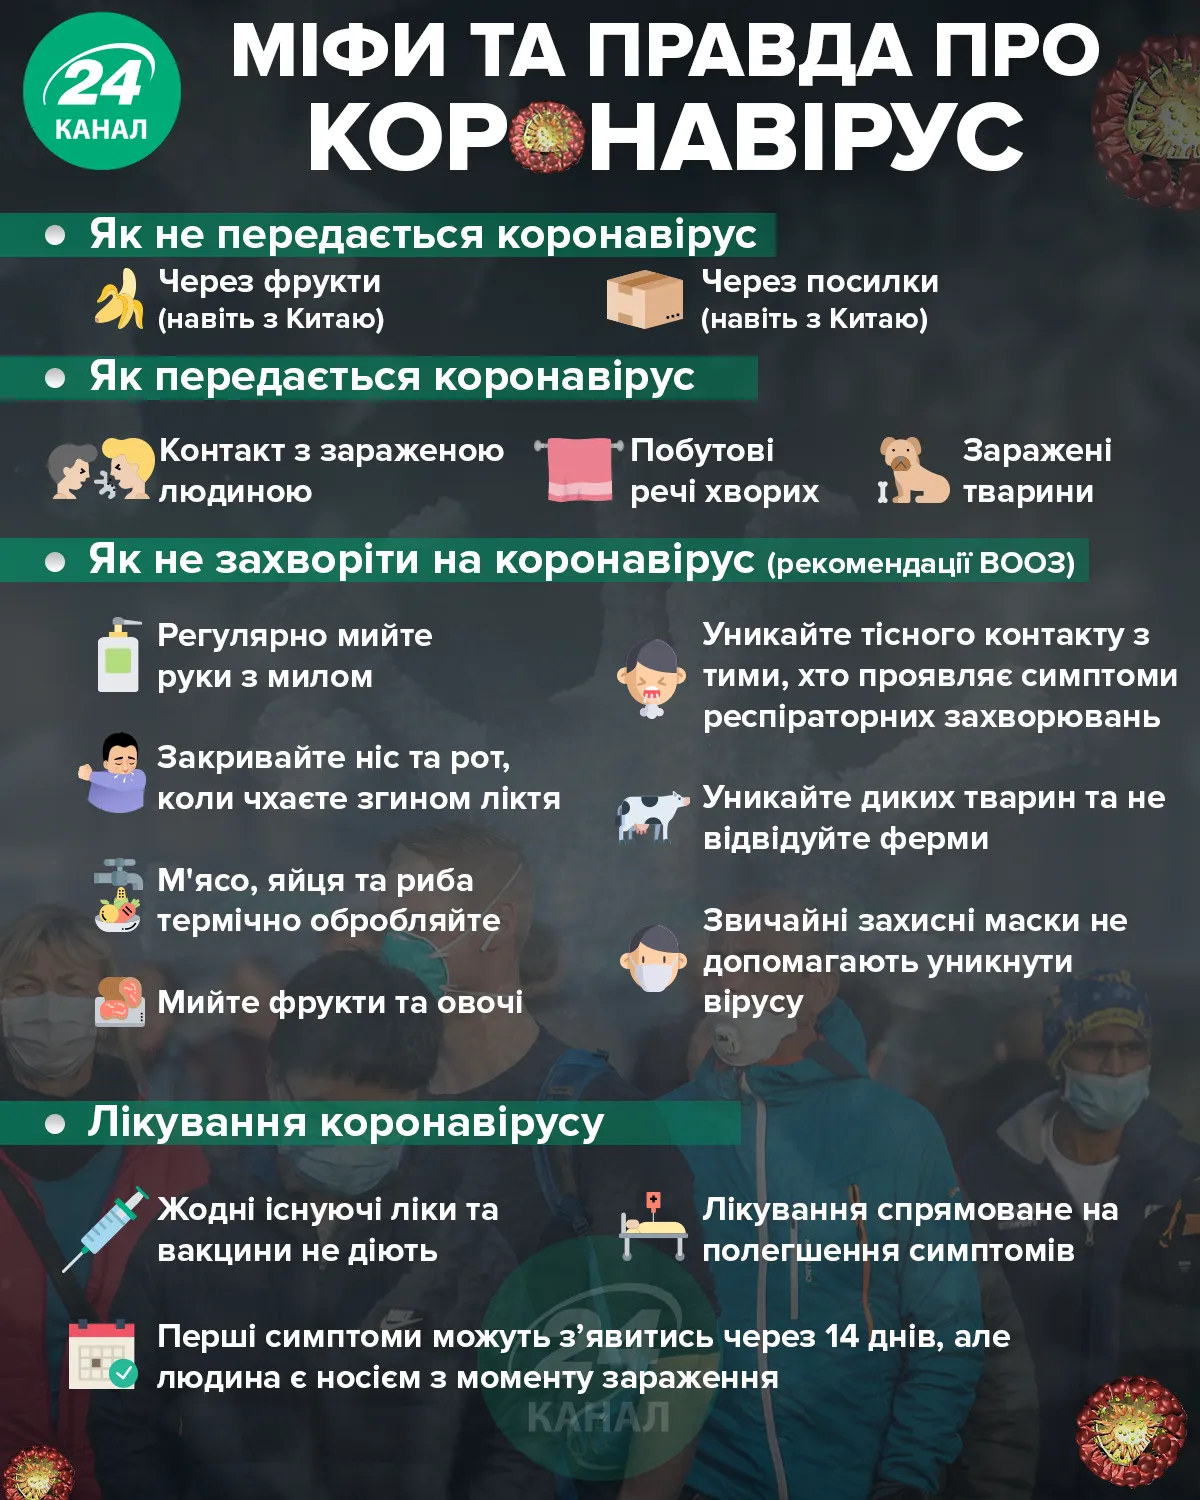 Міфи та правда про коронавірус/Інфографіка 24 каналу